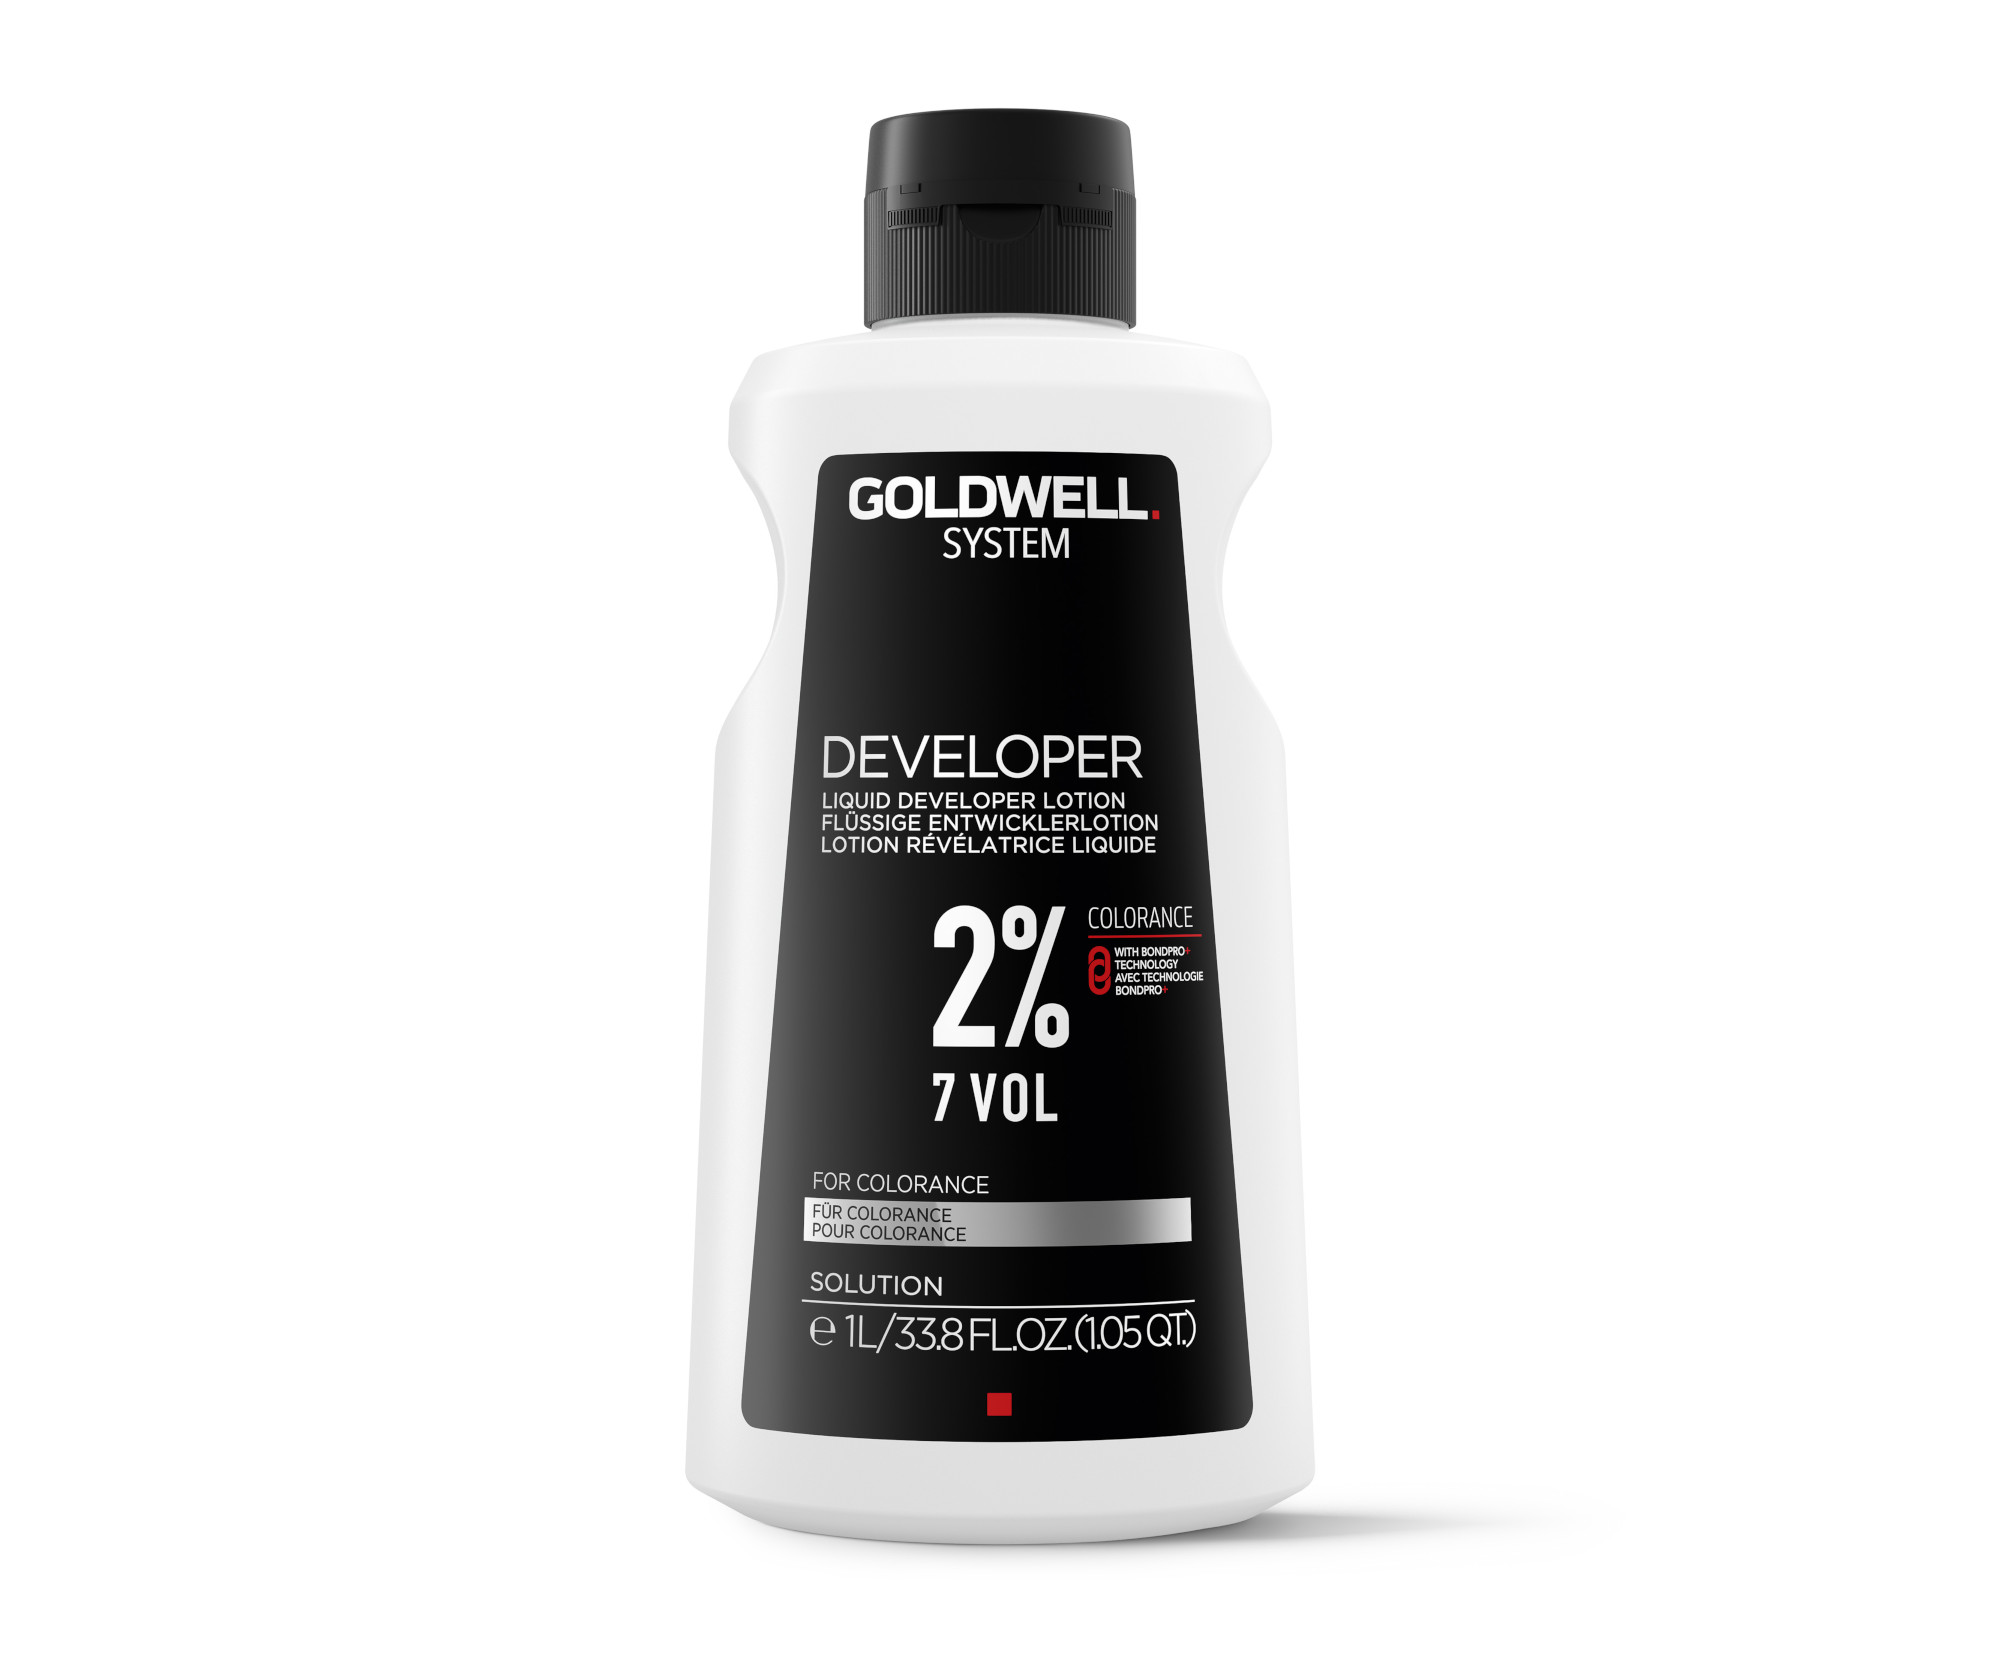 Oxidační krém Goldwell System Developer 7 VOL 2% - 1000 ml (266160) + DÁREK ZDARMA